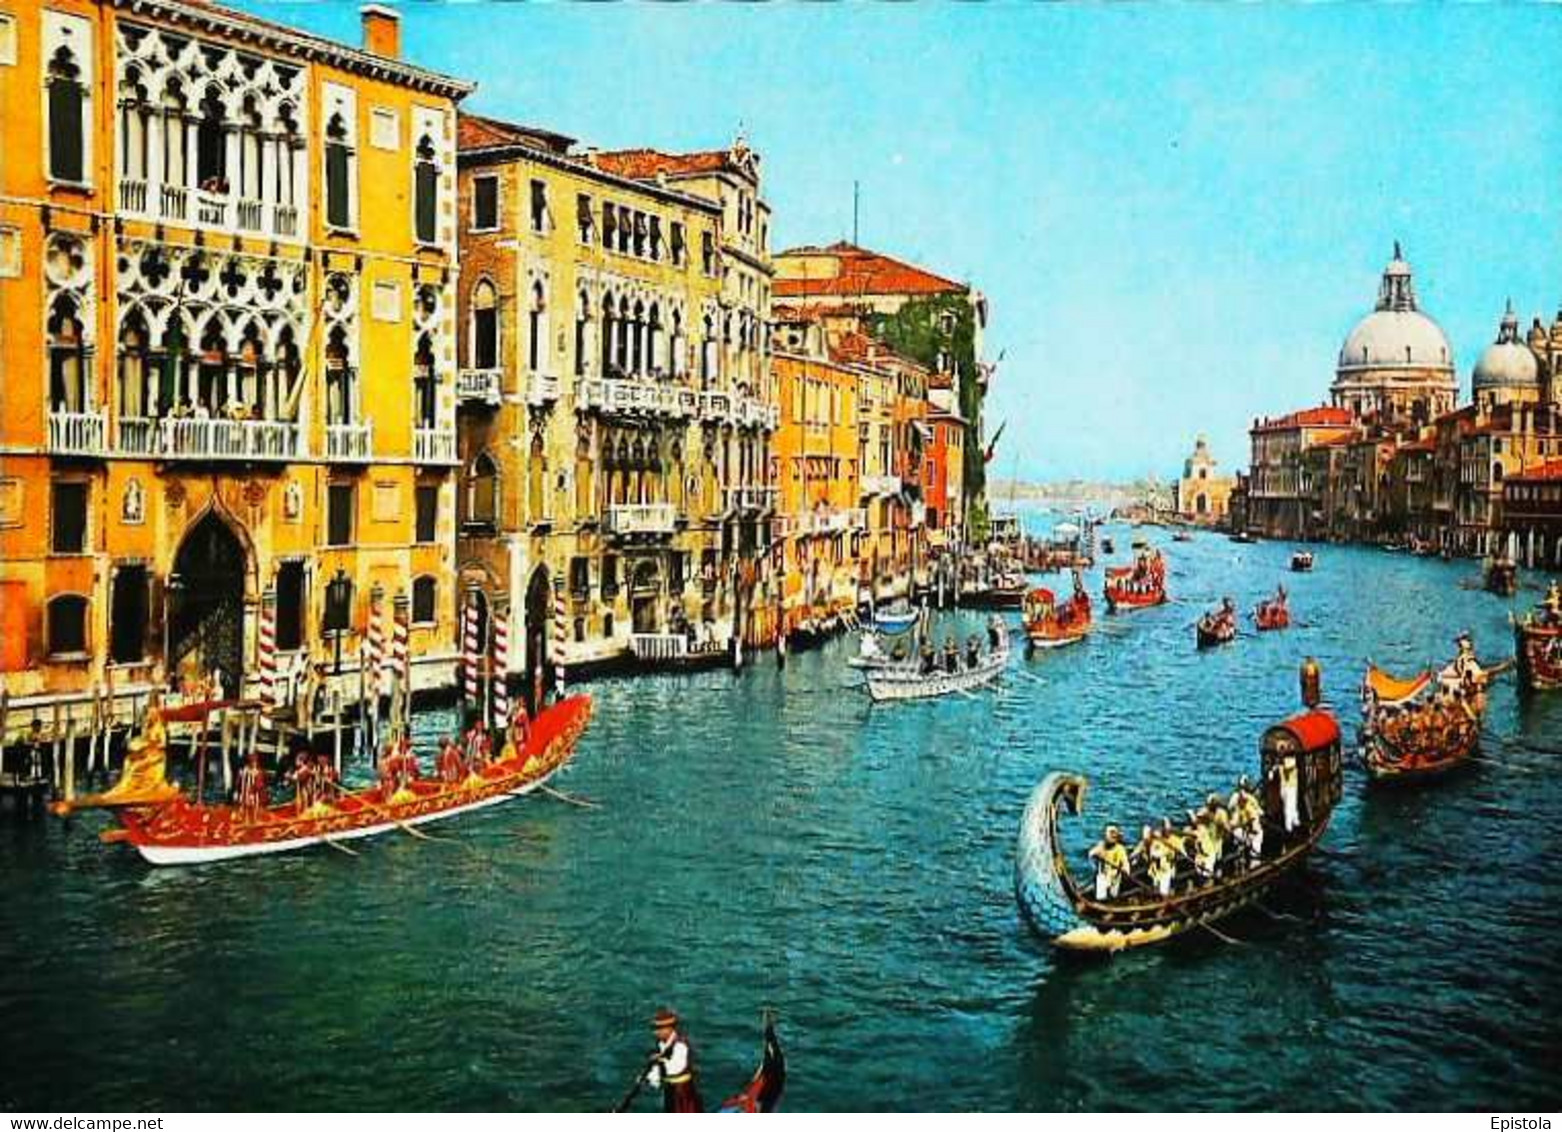 ► REGATA STORICA - Régate Historique Antique De Venise - VENEZIA - Regionale Spelen